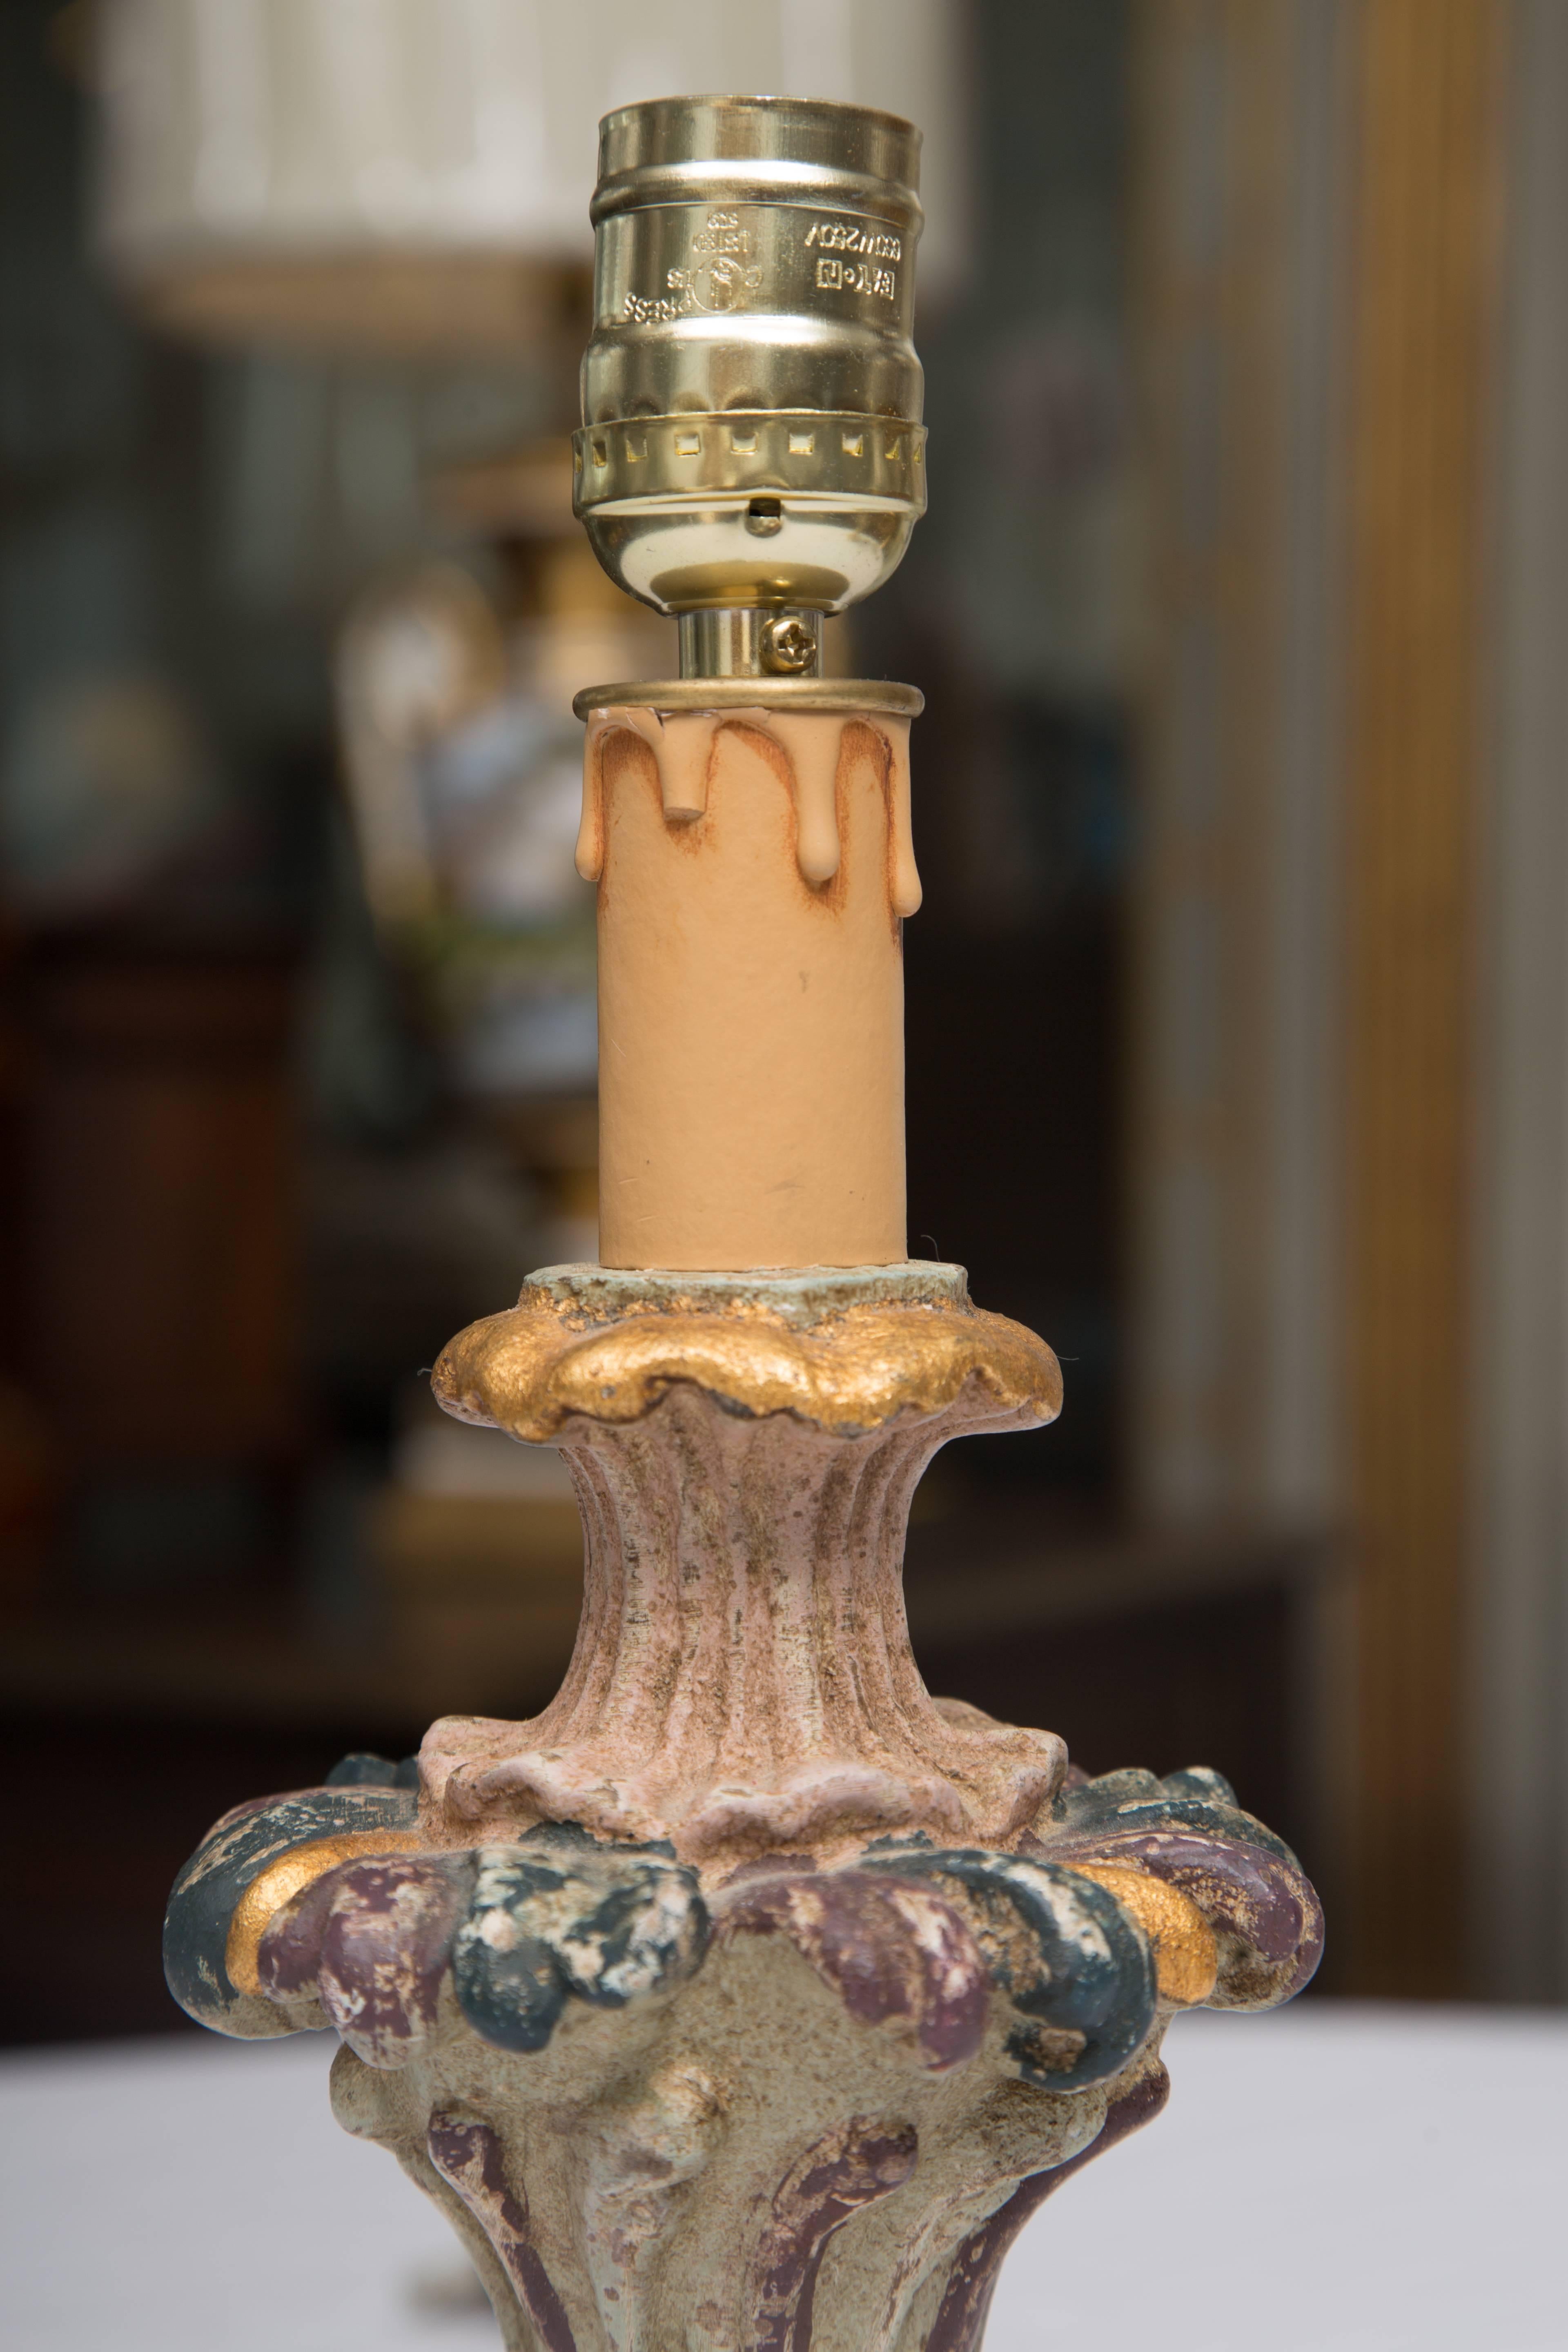 Ces petits bougeoirs italiens en forme d'urnes sont sculptés et peints à la main avec des couleurs douces et délicates avec des dorures parcellaires, et situés sur des bases circulaires. Elles ont été converties en petites lampes.